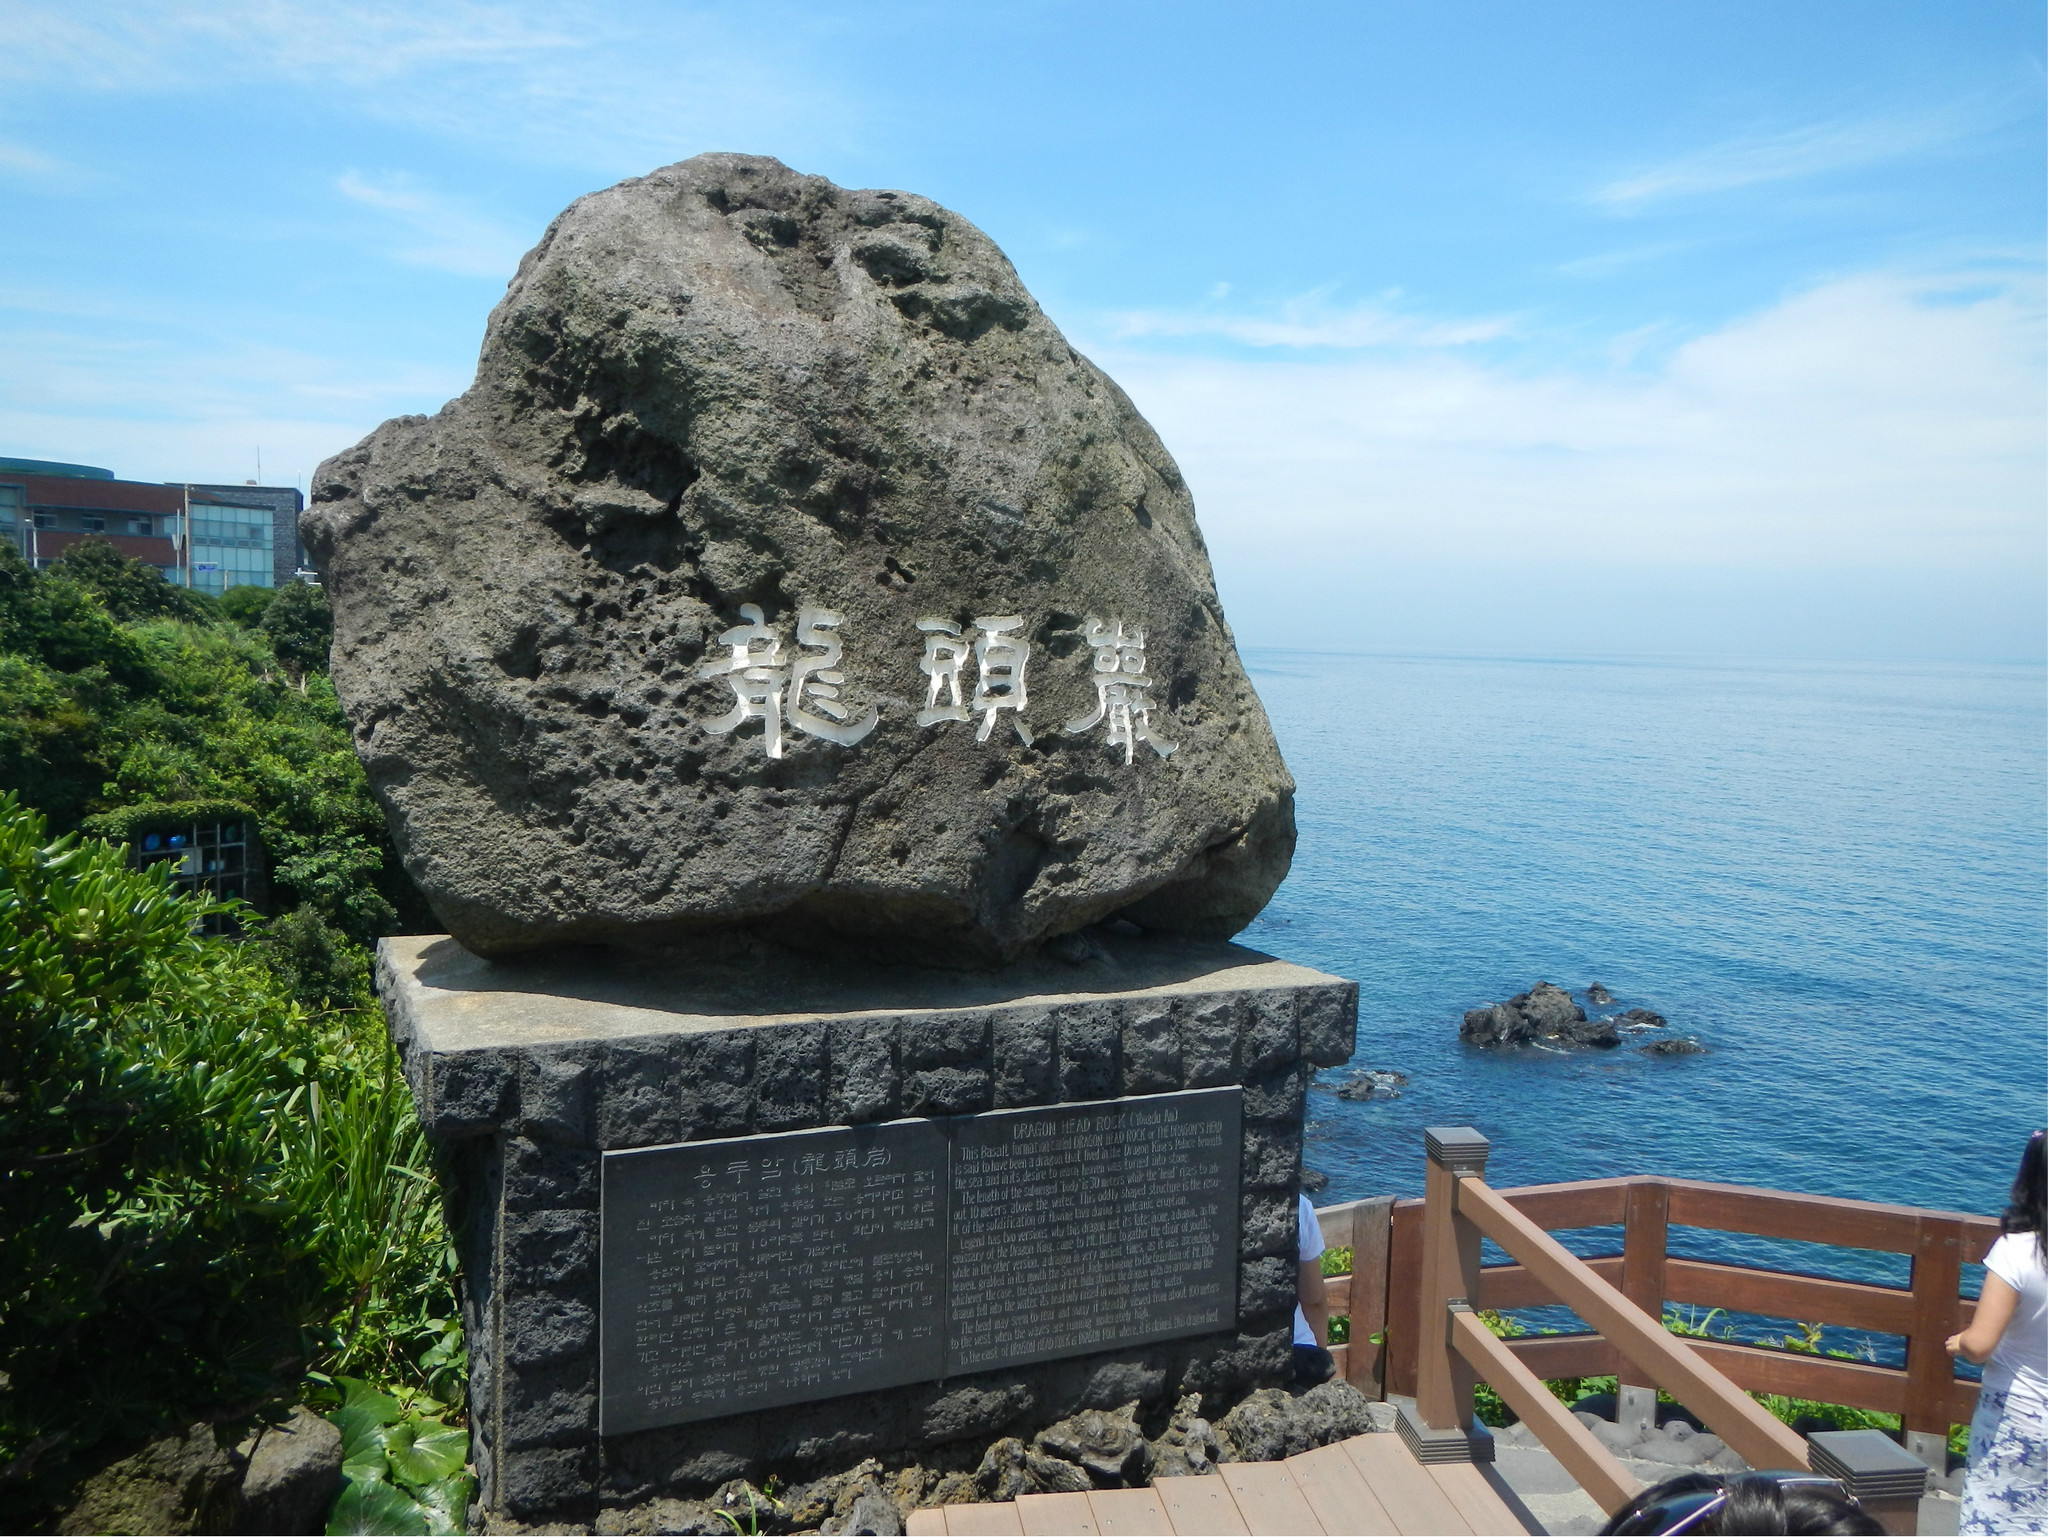 药泉寺 雪绿茶博物馆 中文旅游区() 正房瀑布  调查,研究并搜集济州岛